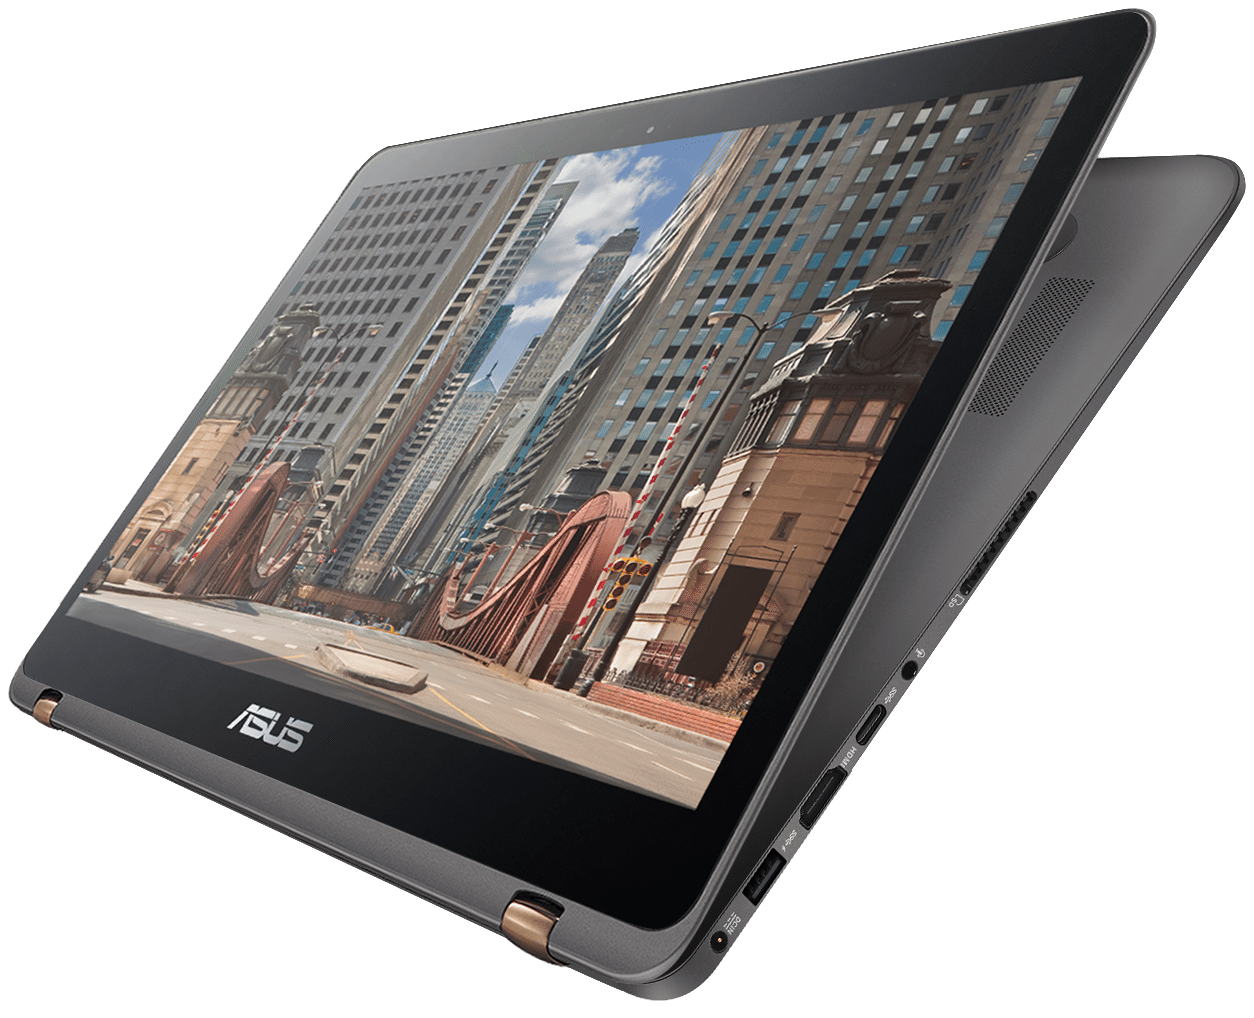 ASUS ZenBook Flip UX360UA Notebook Canggih yang Dapat Diputar Hingga 360 Derajat